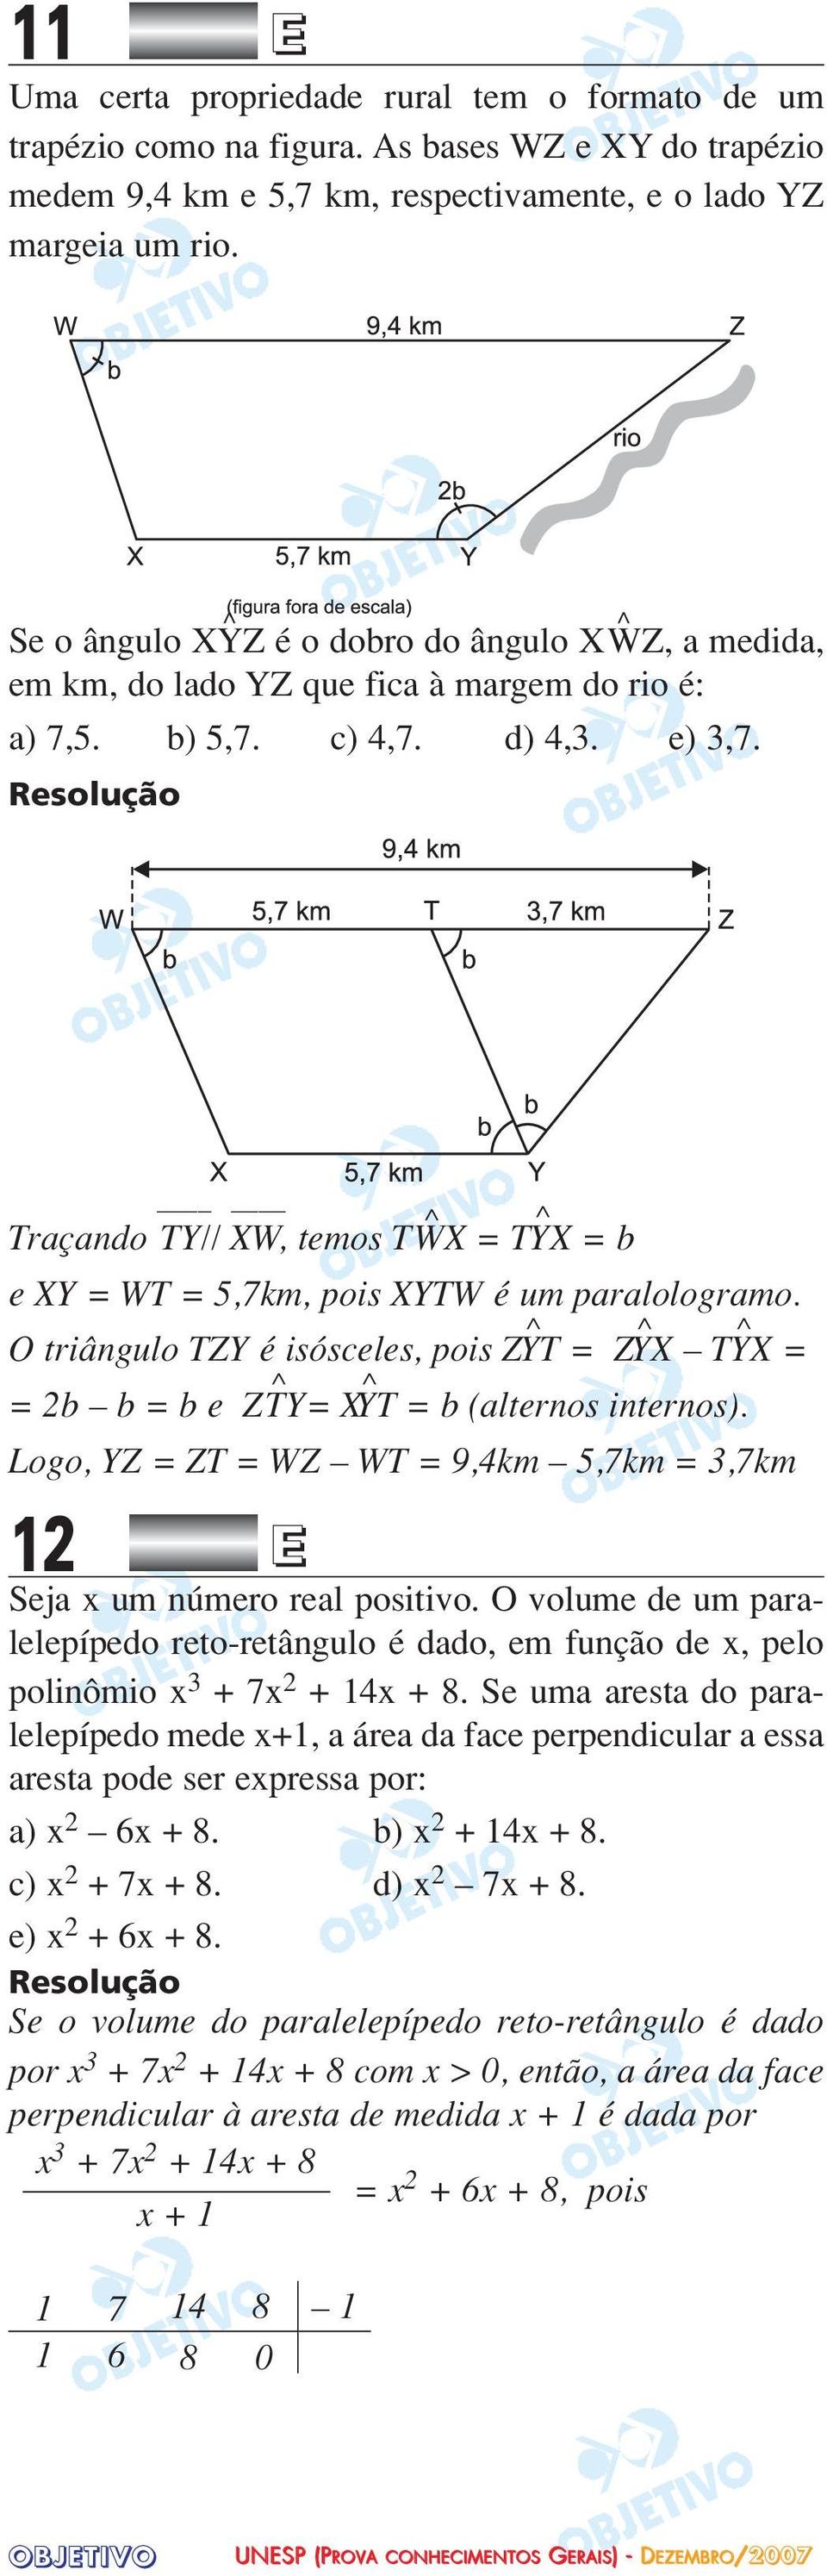 Traçando TY// XW, temos T ^WX = T ^YX = b e XY = WT = 5,7km, pois XYTW é um paralologramo. O triângulo TZY é isósceles, pois Z ^YT = Z ^YX T ^YX = = 2b b = b e Z ^TY= X^YT = b (alternos internos).